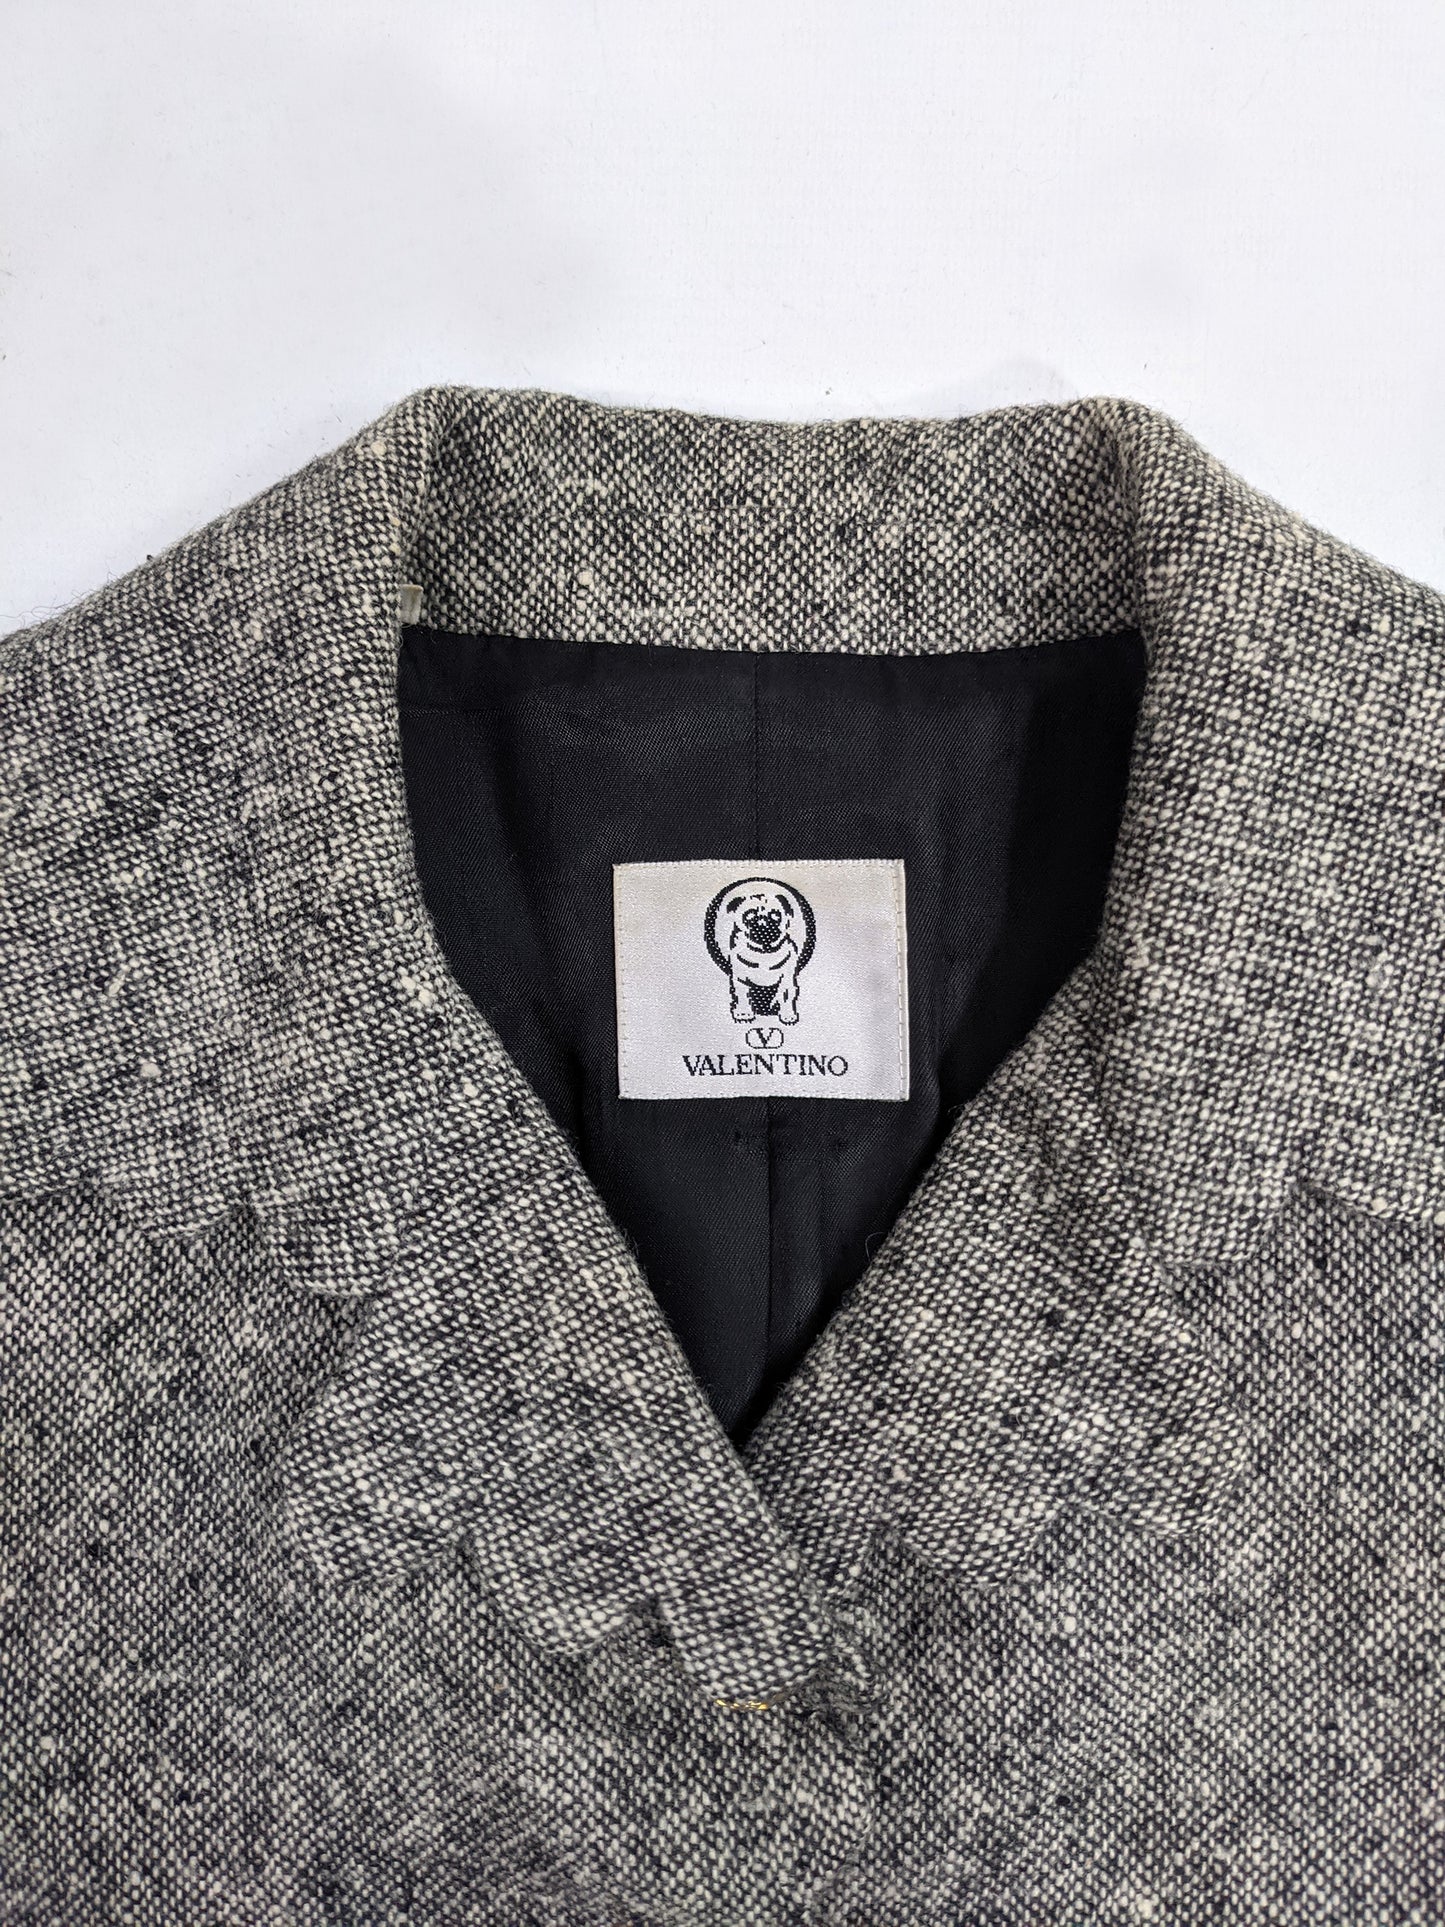 Vintage Womens Scalloped Edge Grey Wool Tweed Coat, 1990s